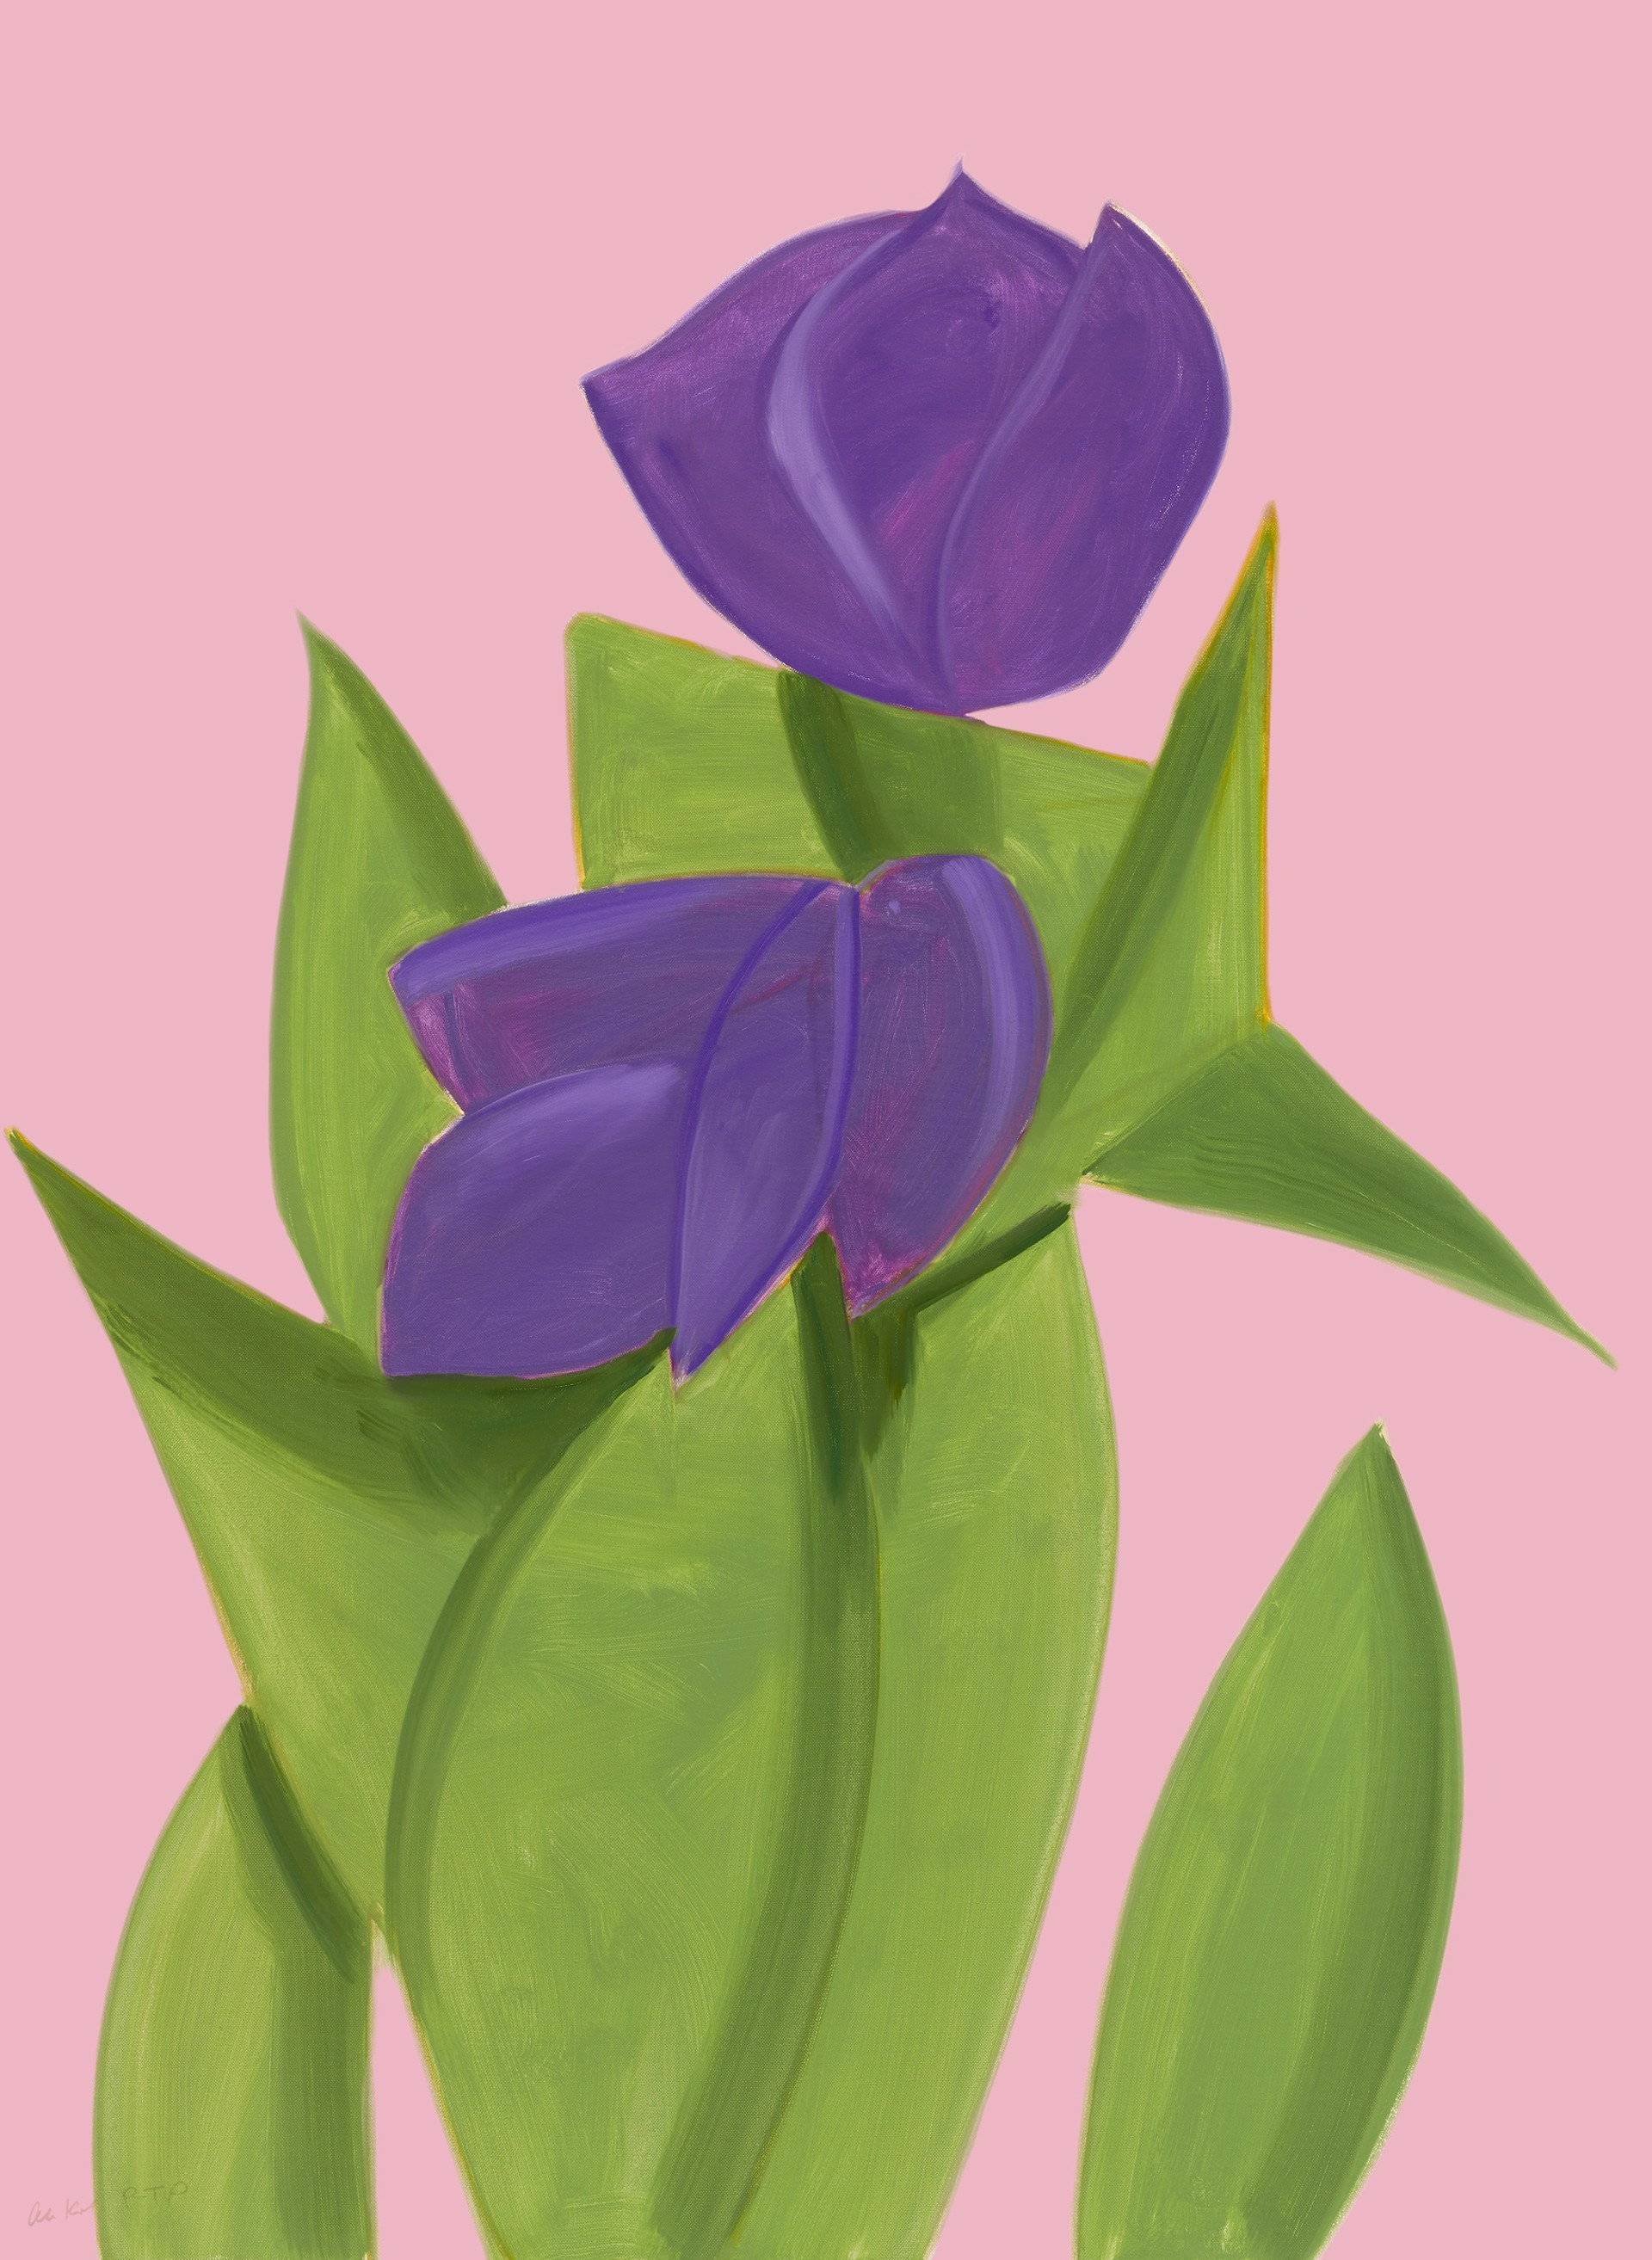 Purple Tulips 2 by Alex Katz (b. 1927)